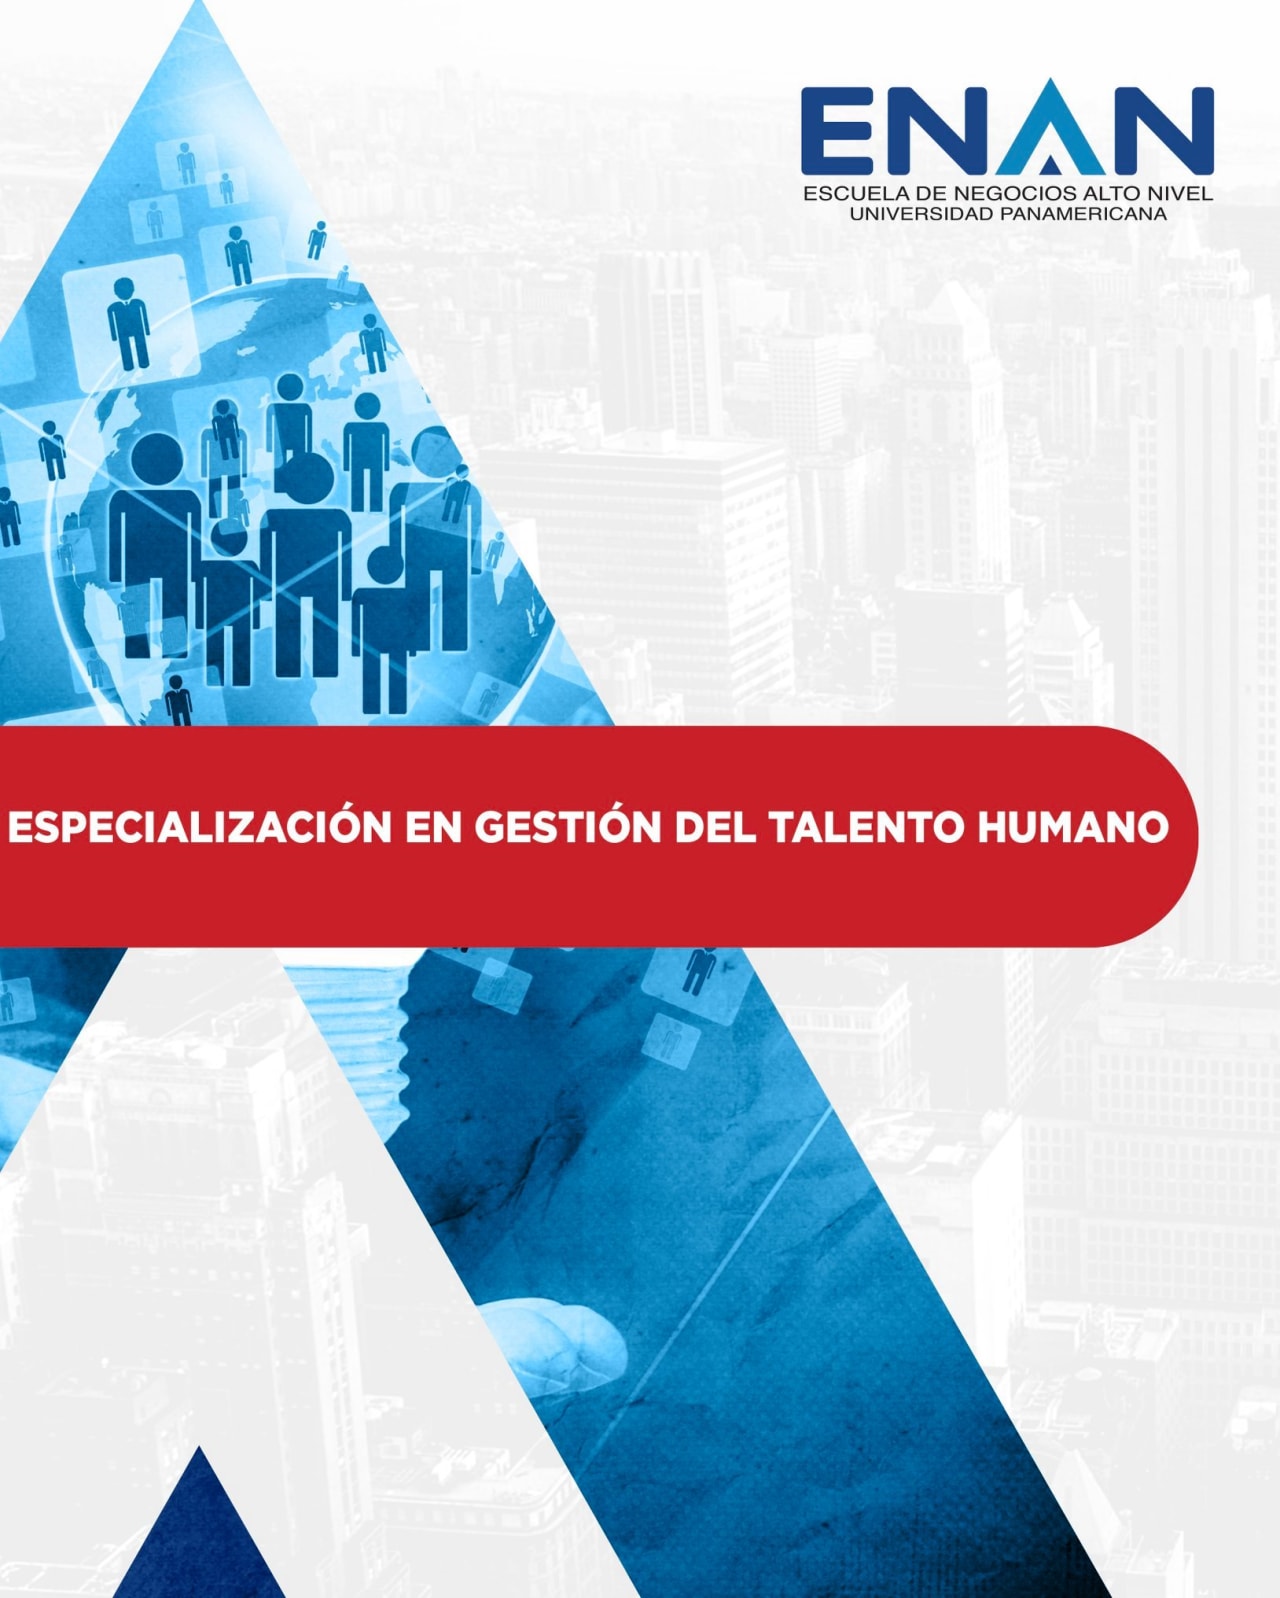 Escuela de Negocios Alto Nivel - Universidad Panamericana de Guatemala Specialisatie in Human Talent Management